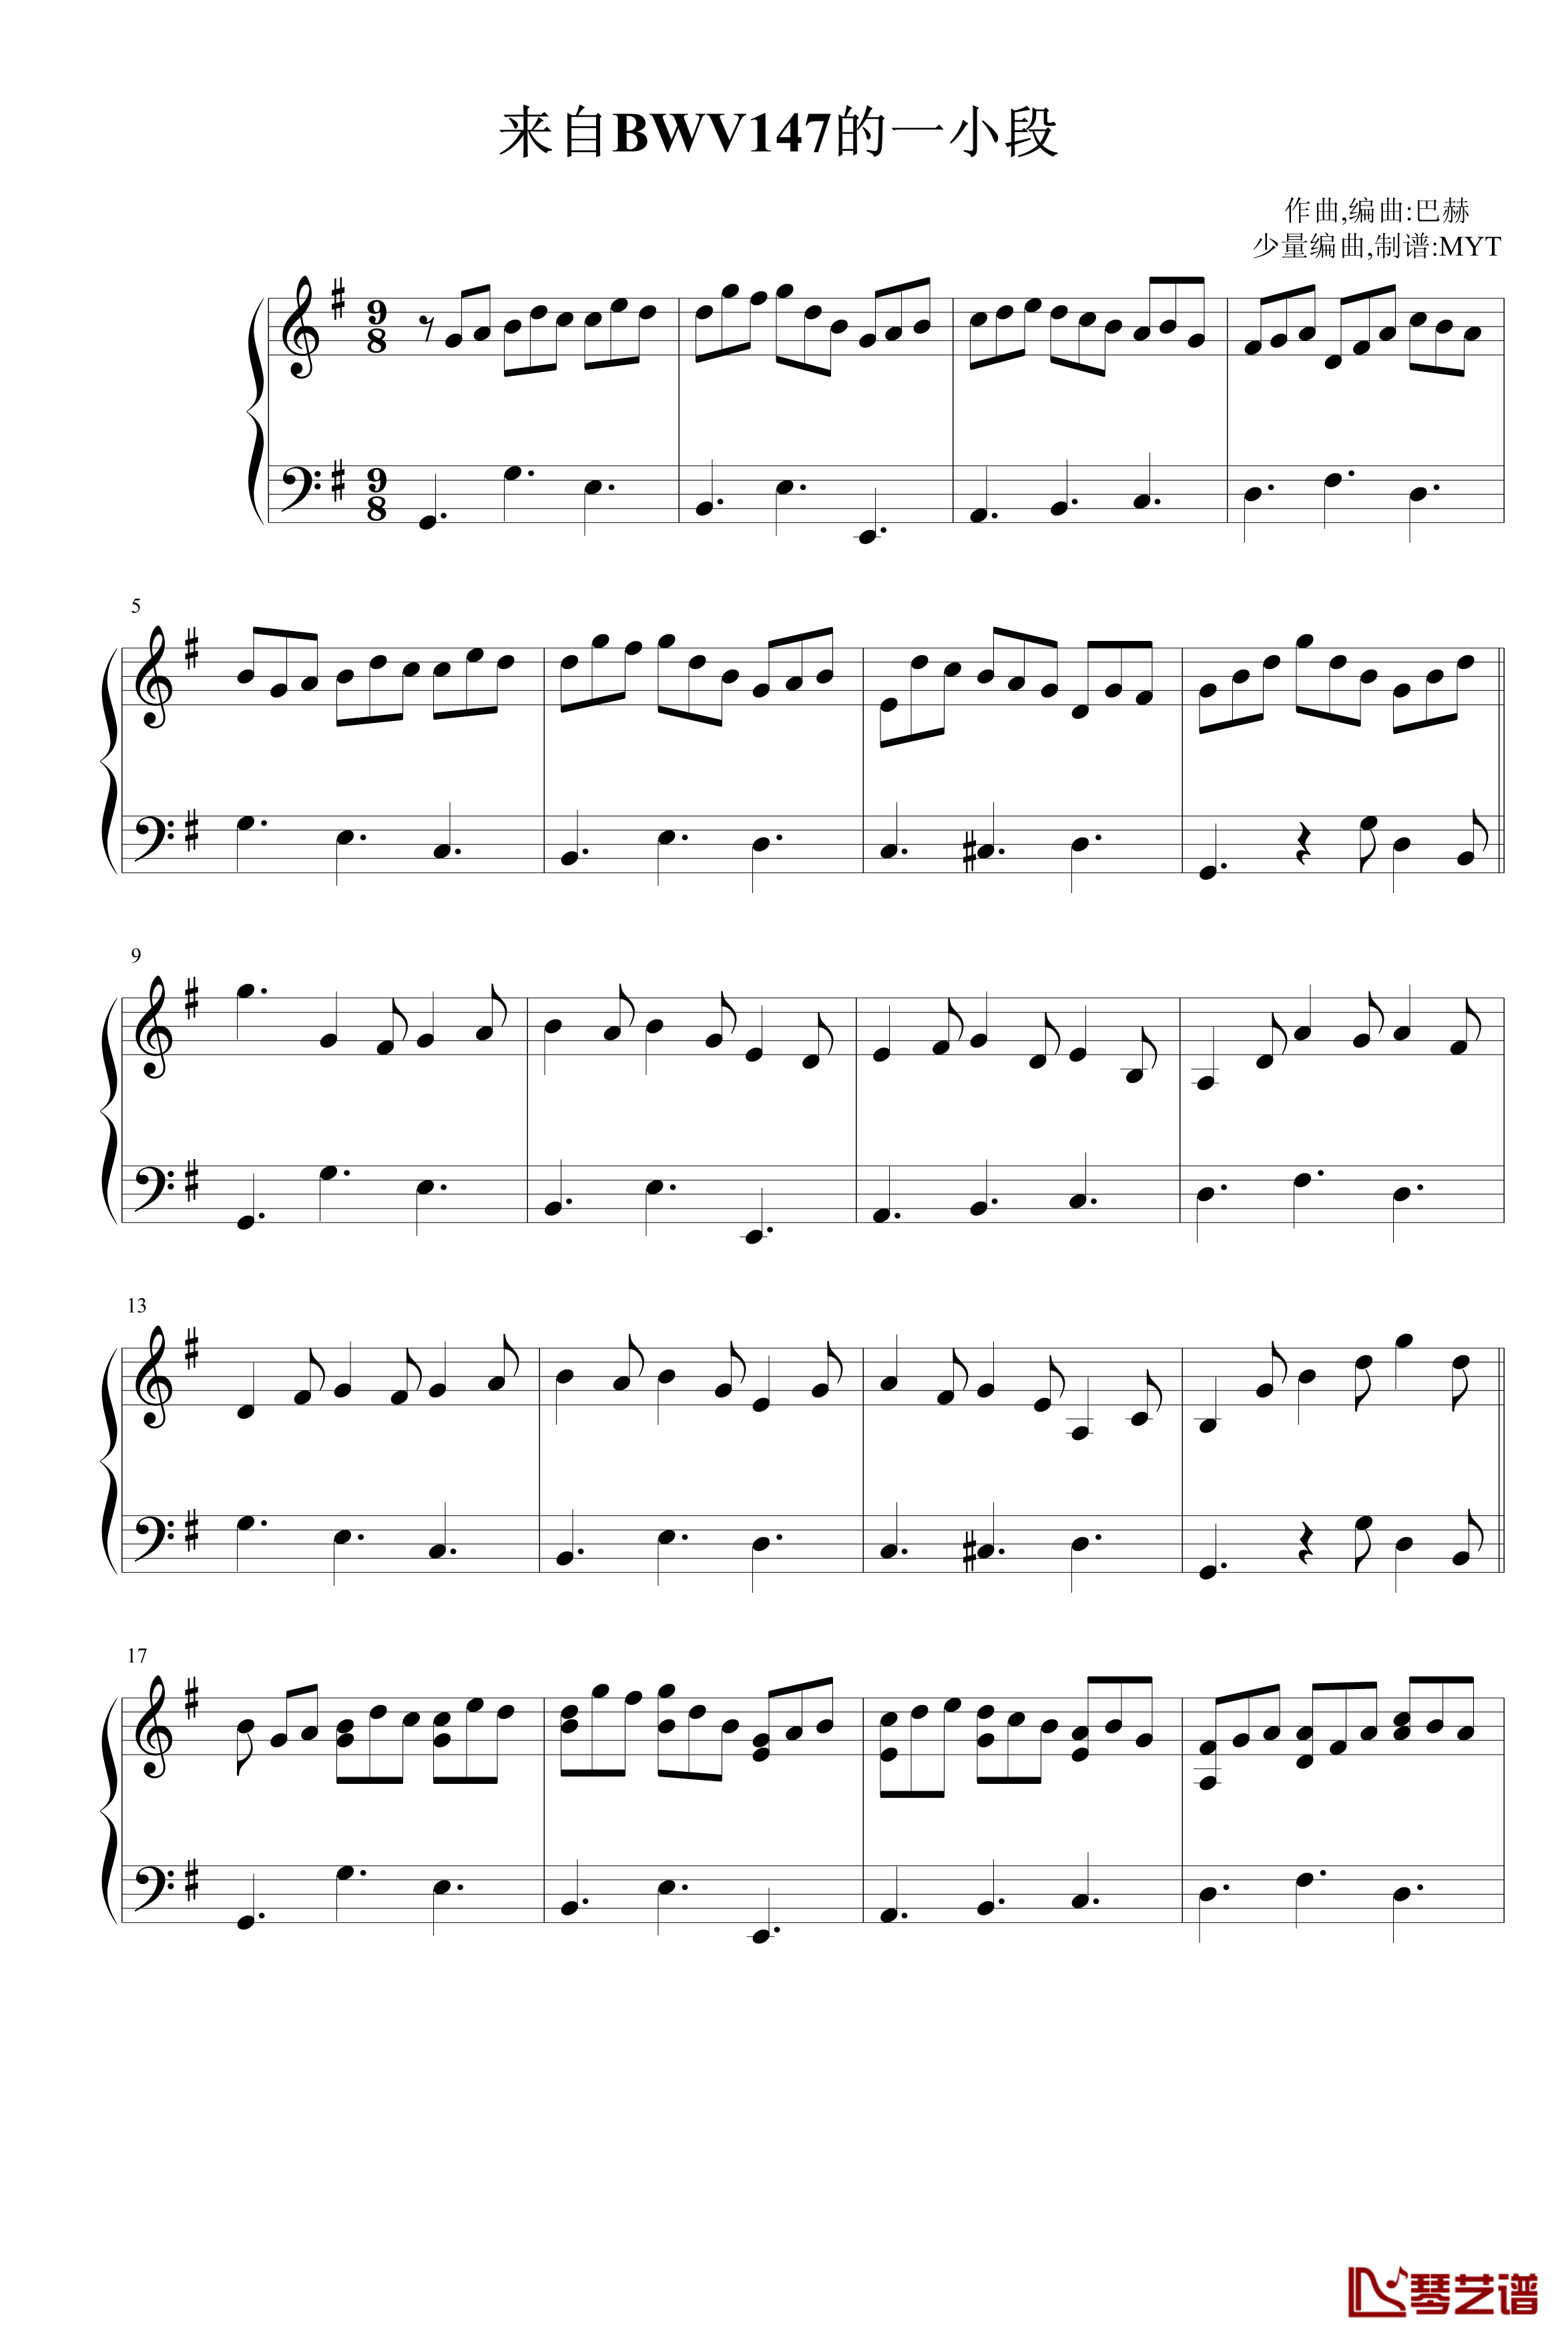 来自BWV147的一小段钢琴谱-巴赫-P.E.Bach1